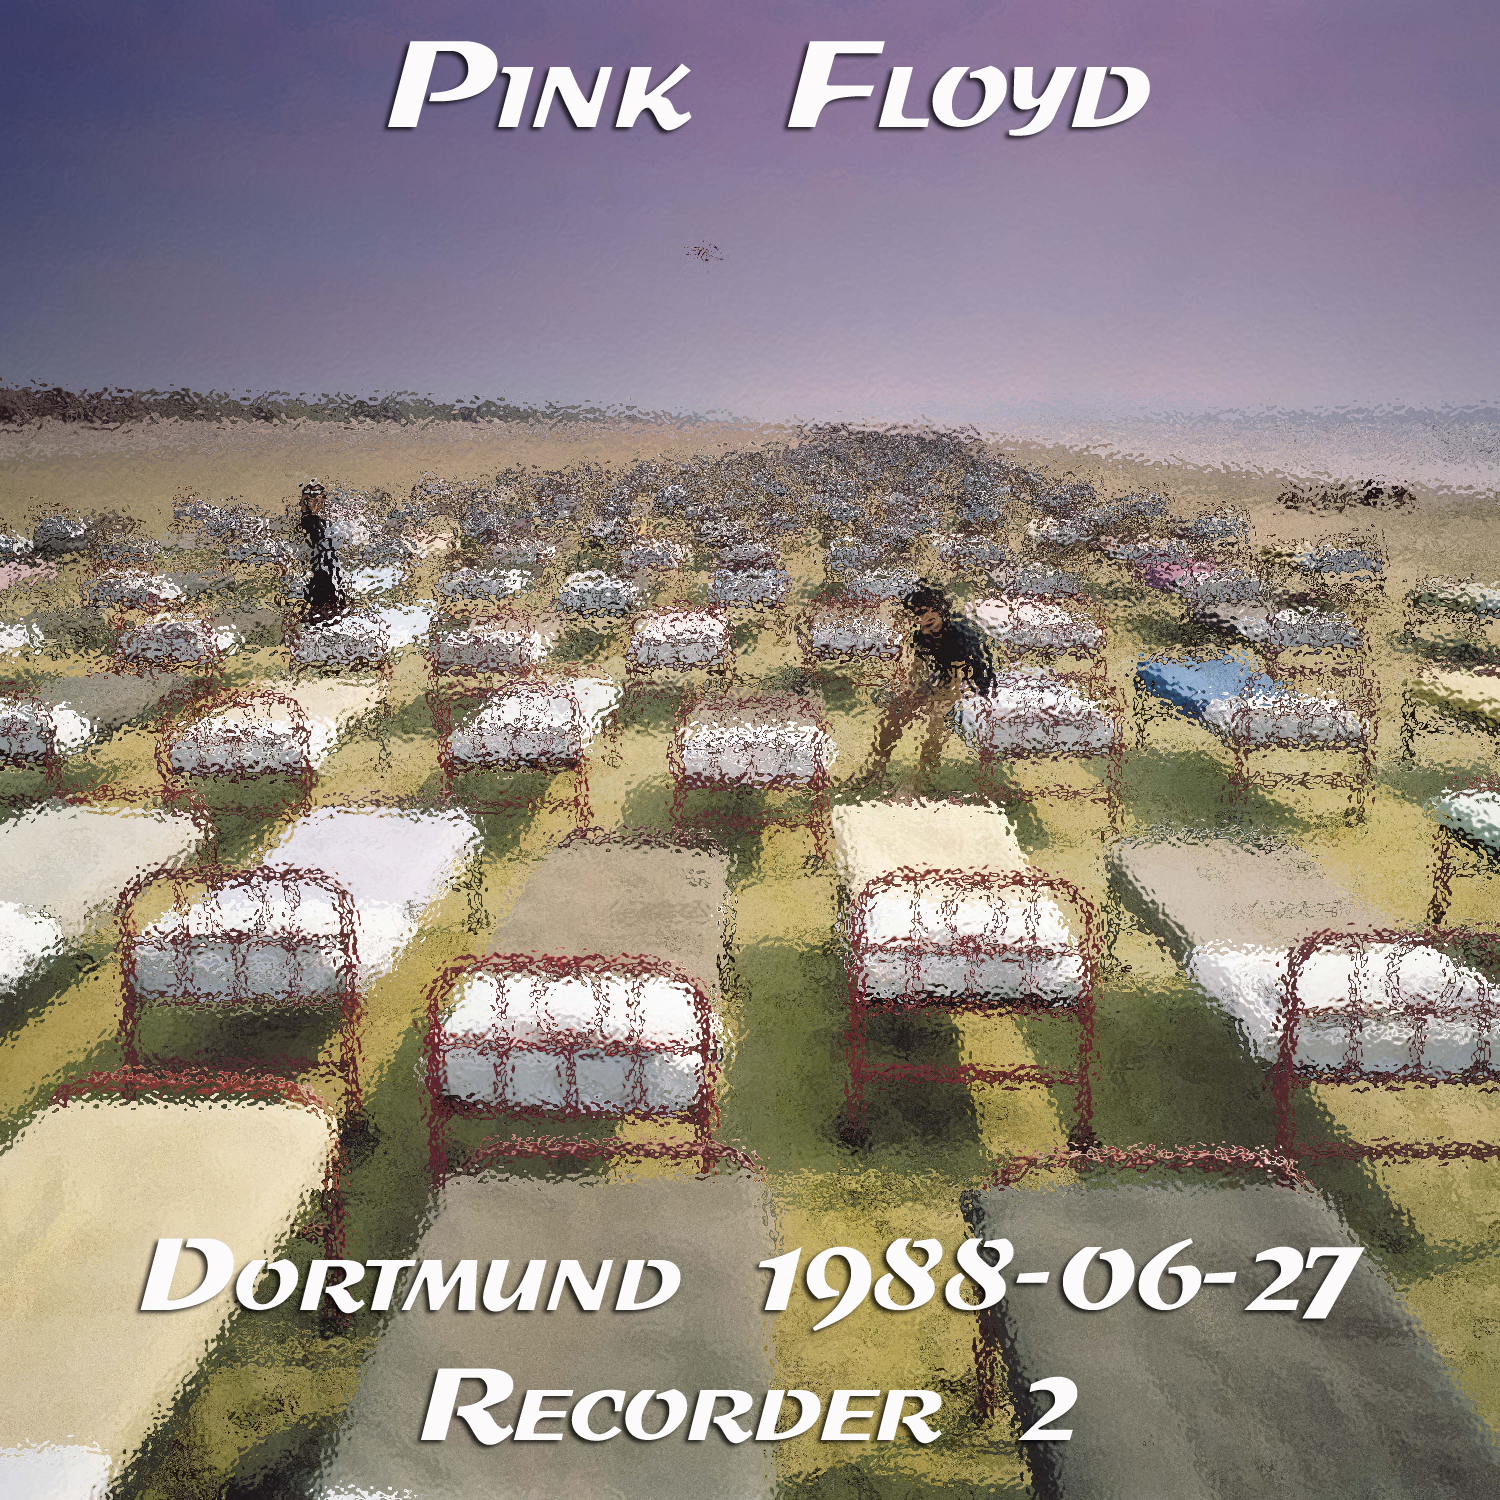 PinkFloyd1988-06-27WestfalenhalleDortmundWestGermany (2).jpg